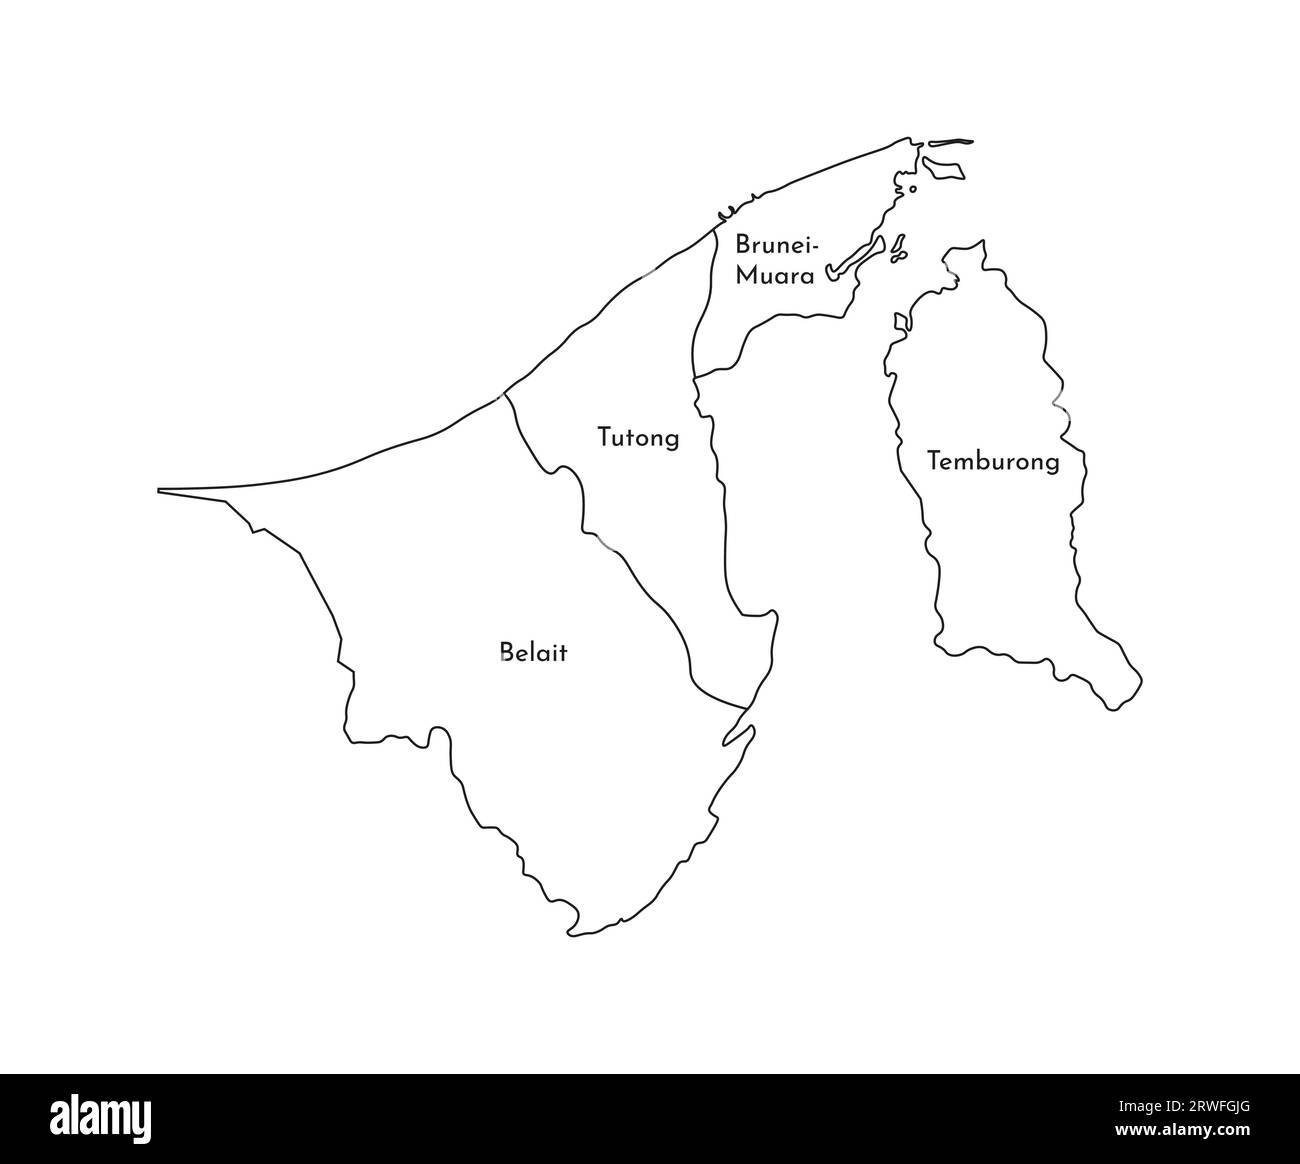 Illustrazione vettoriale isolata della mappa amministrativa semplificata del Brunei. Confini e nomi delle regioni. Silhouette nere. Illustrazione Vettoriale